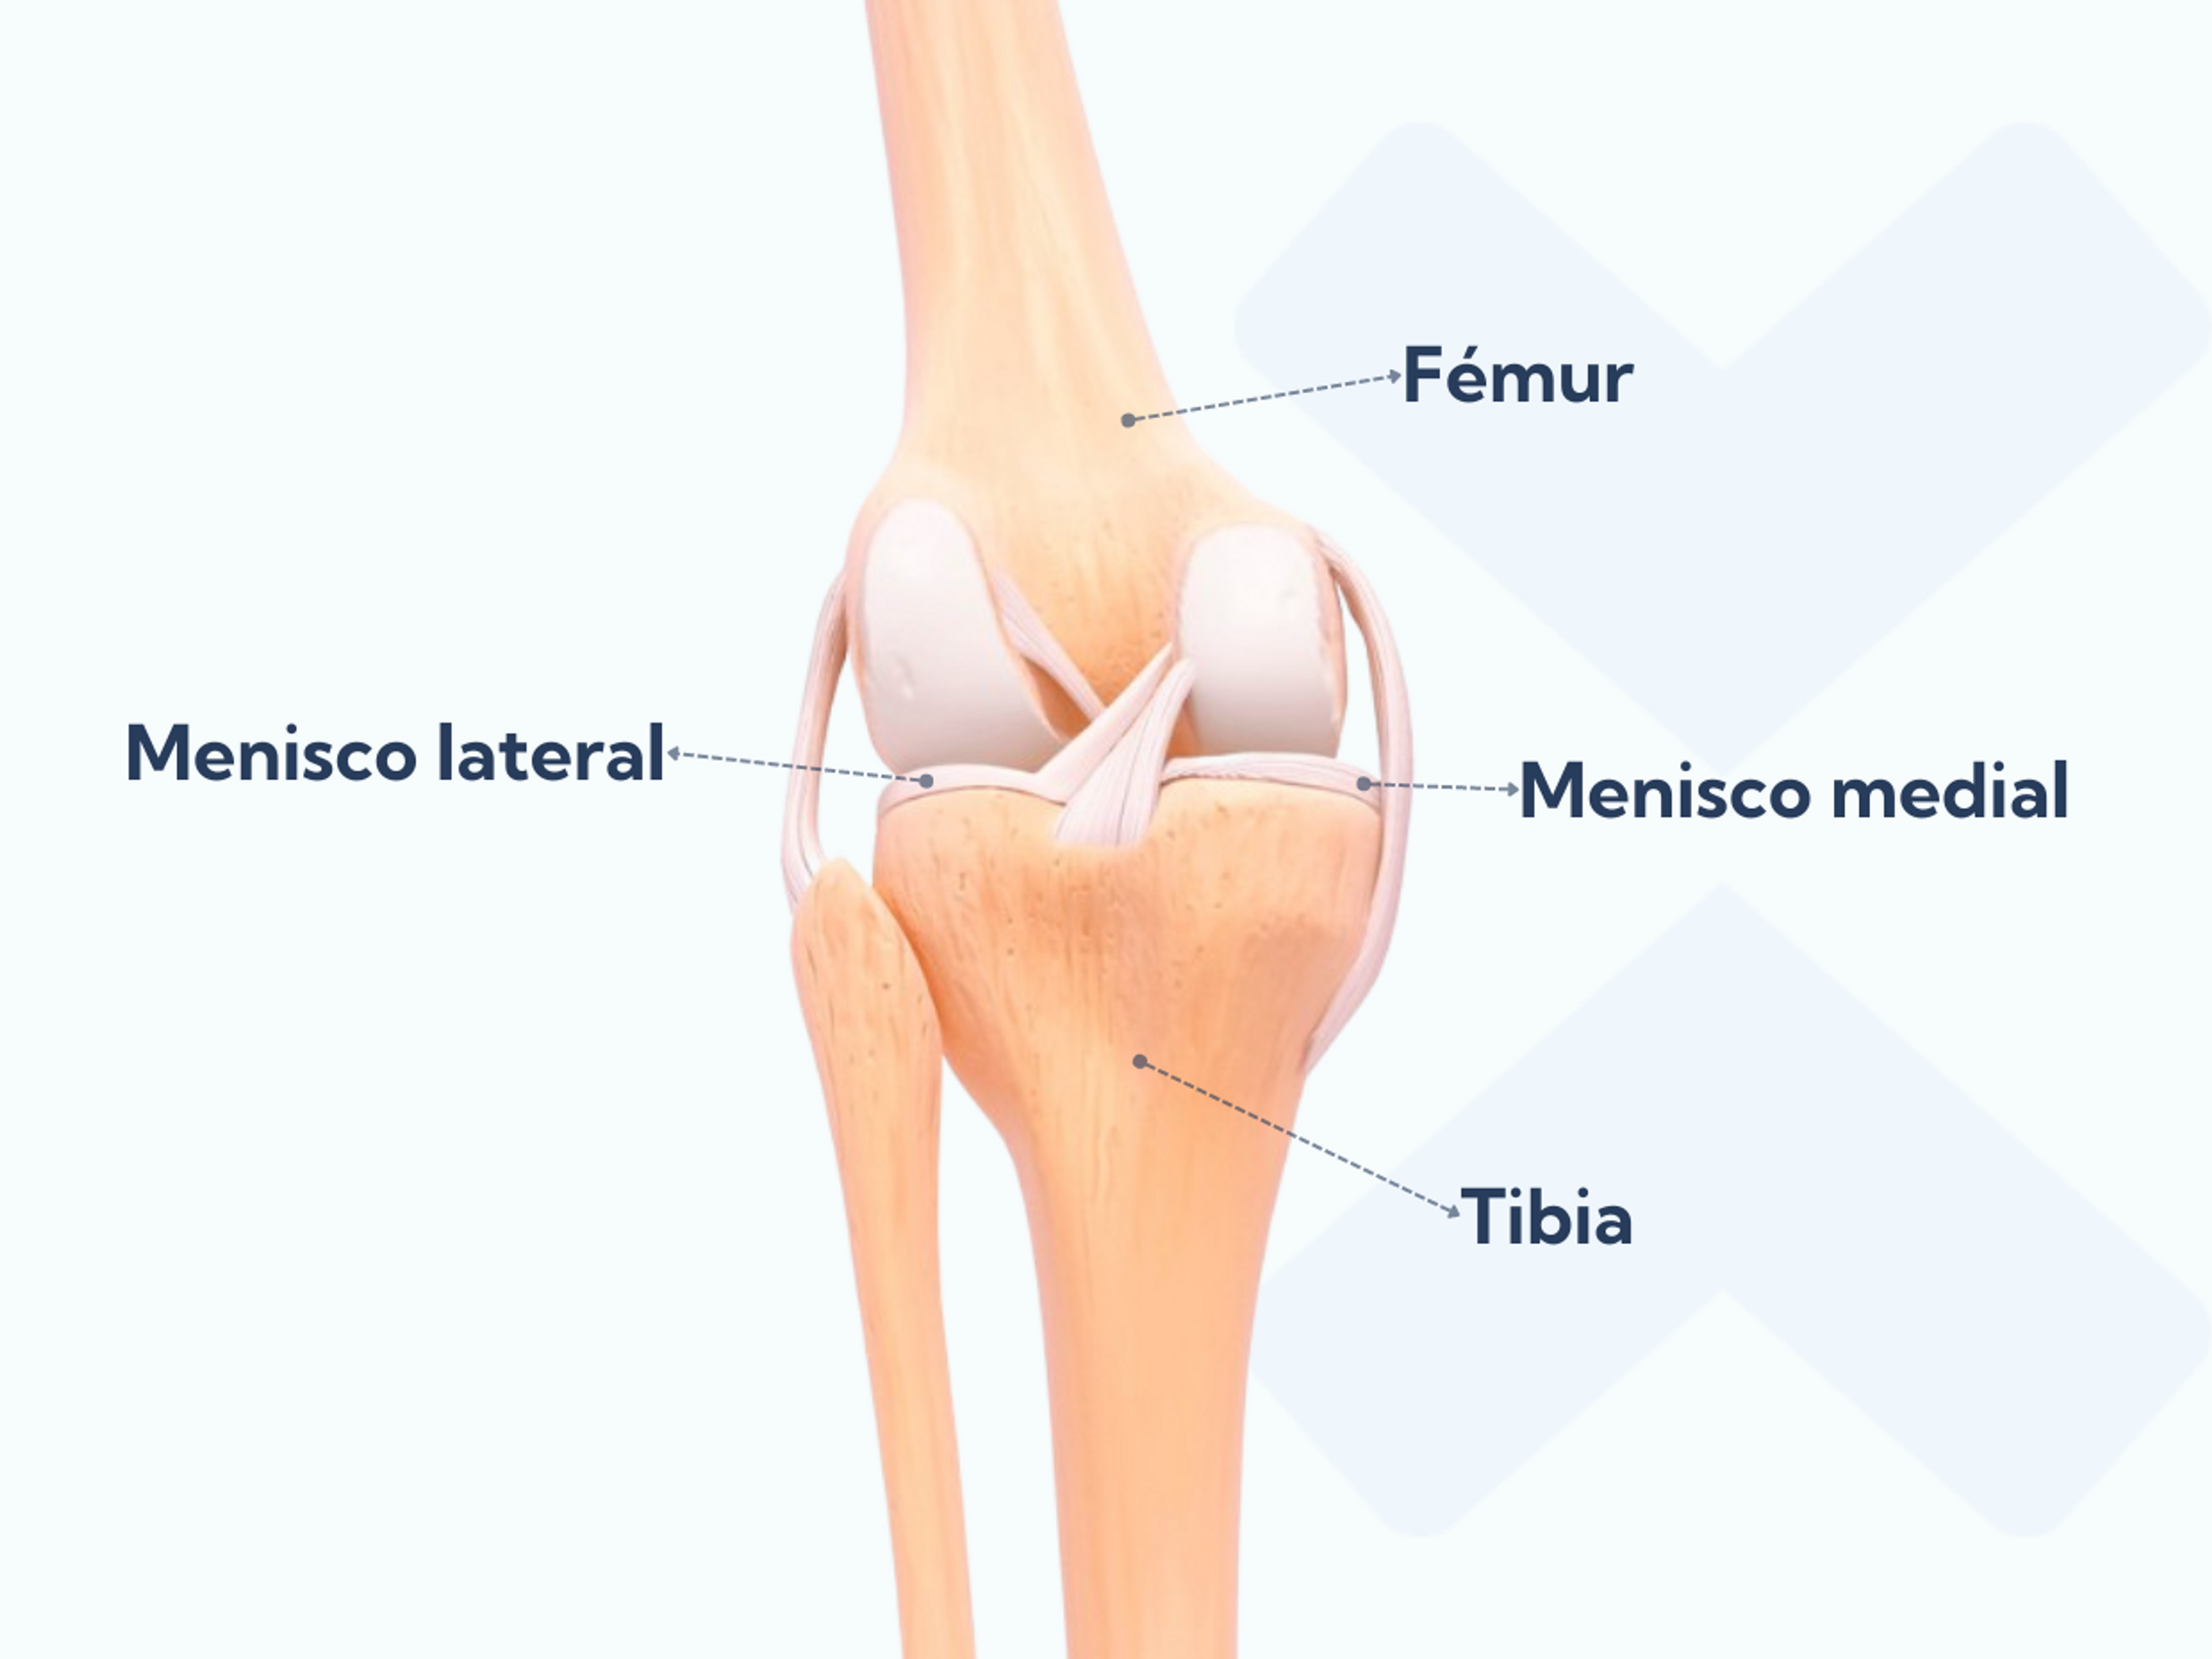 Anatomía de la articulación de la rodilla donde se muestran los meniscos medial y lateral